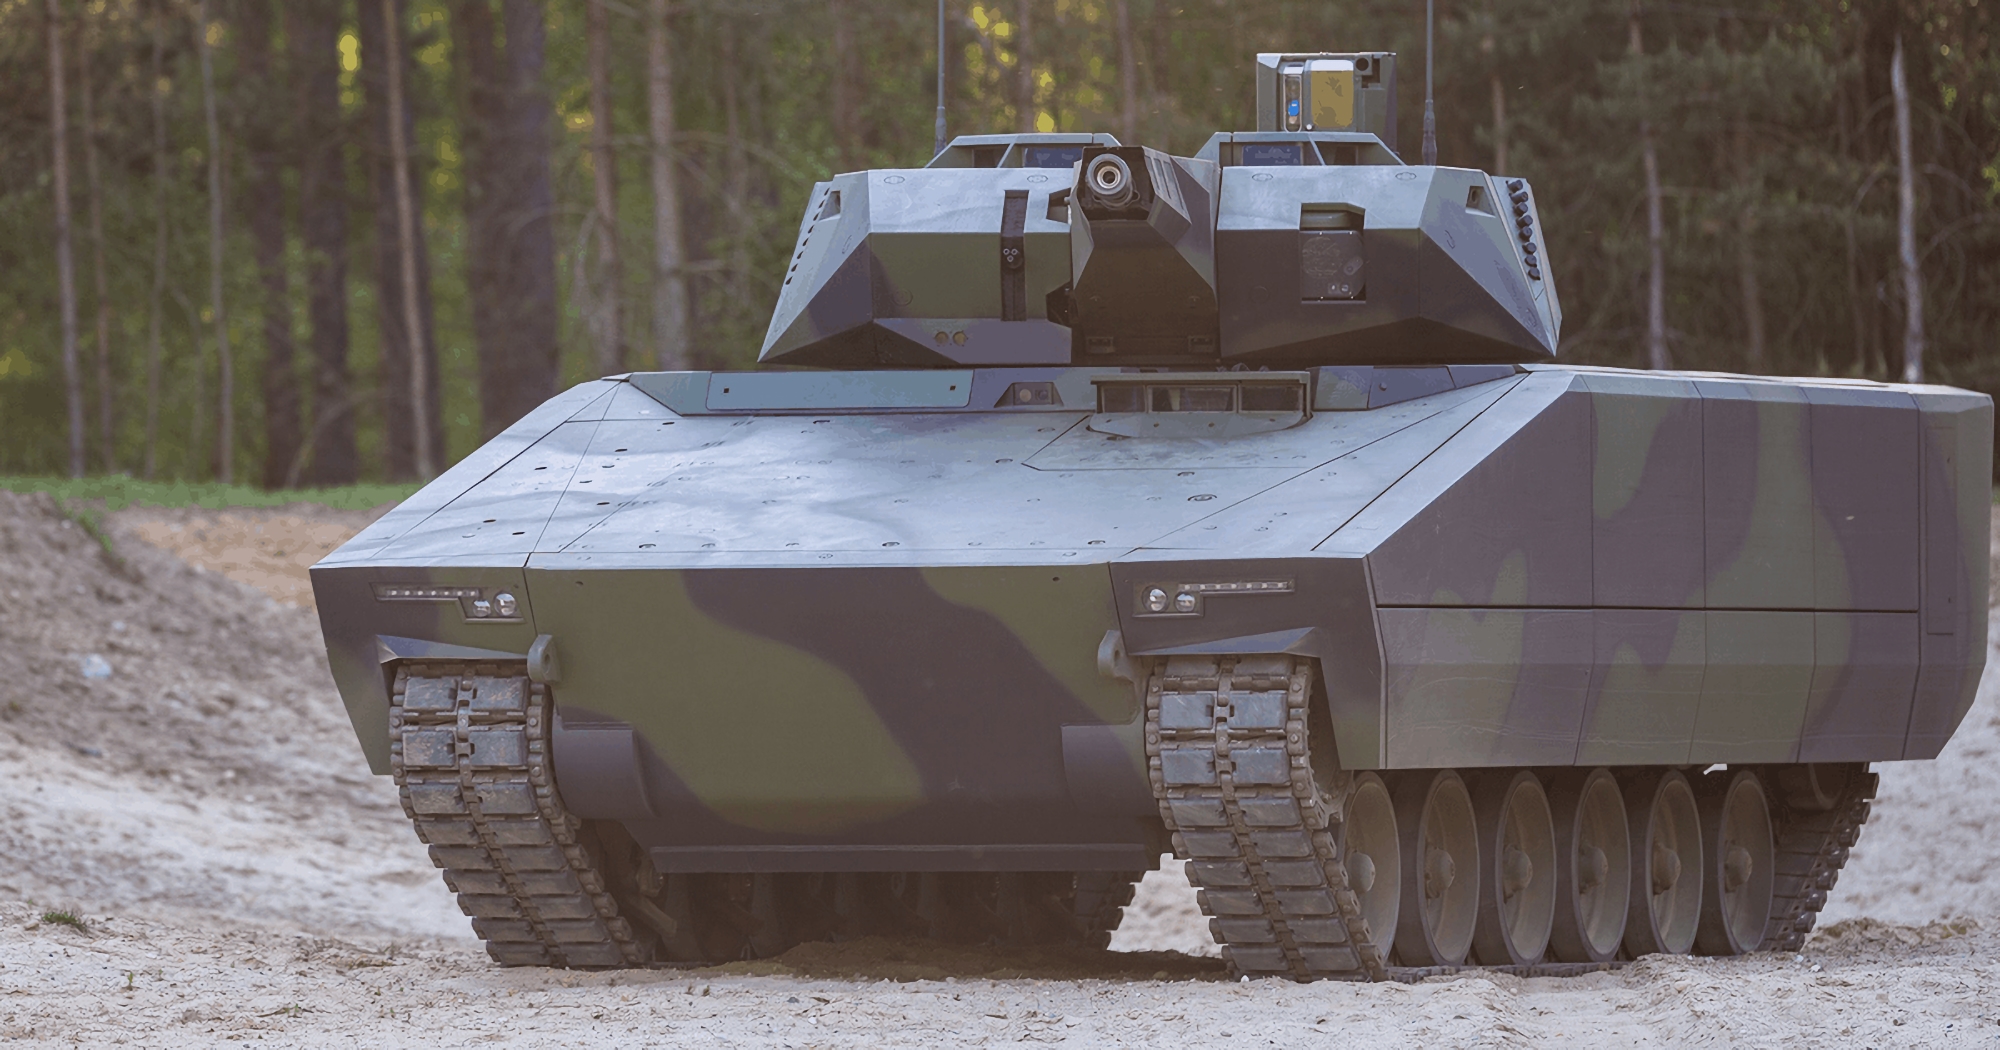 Non solo carri armati Panther KF51: L'AFU potrebbe ricevere i moderni veicoli da combattimento per la fanteria Lynx KF41